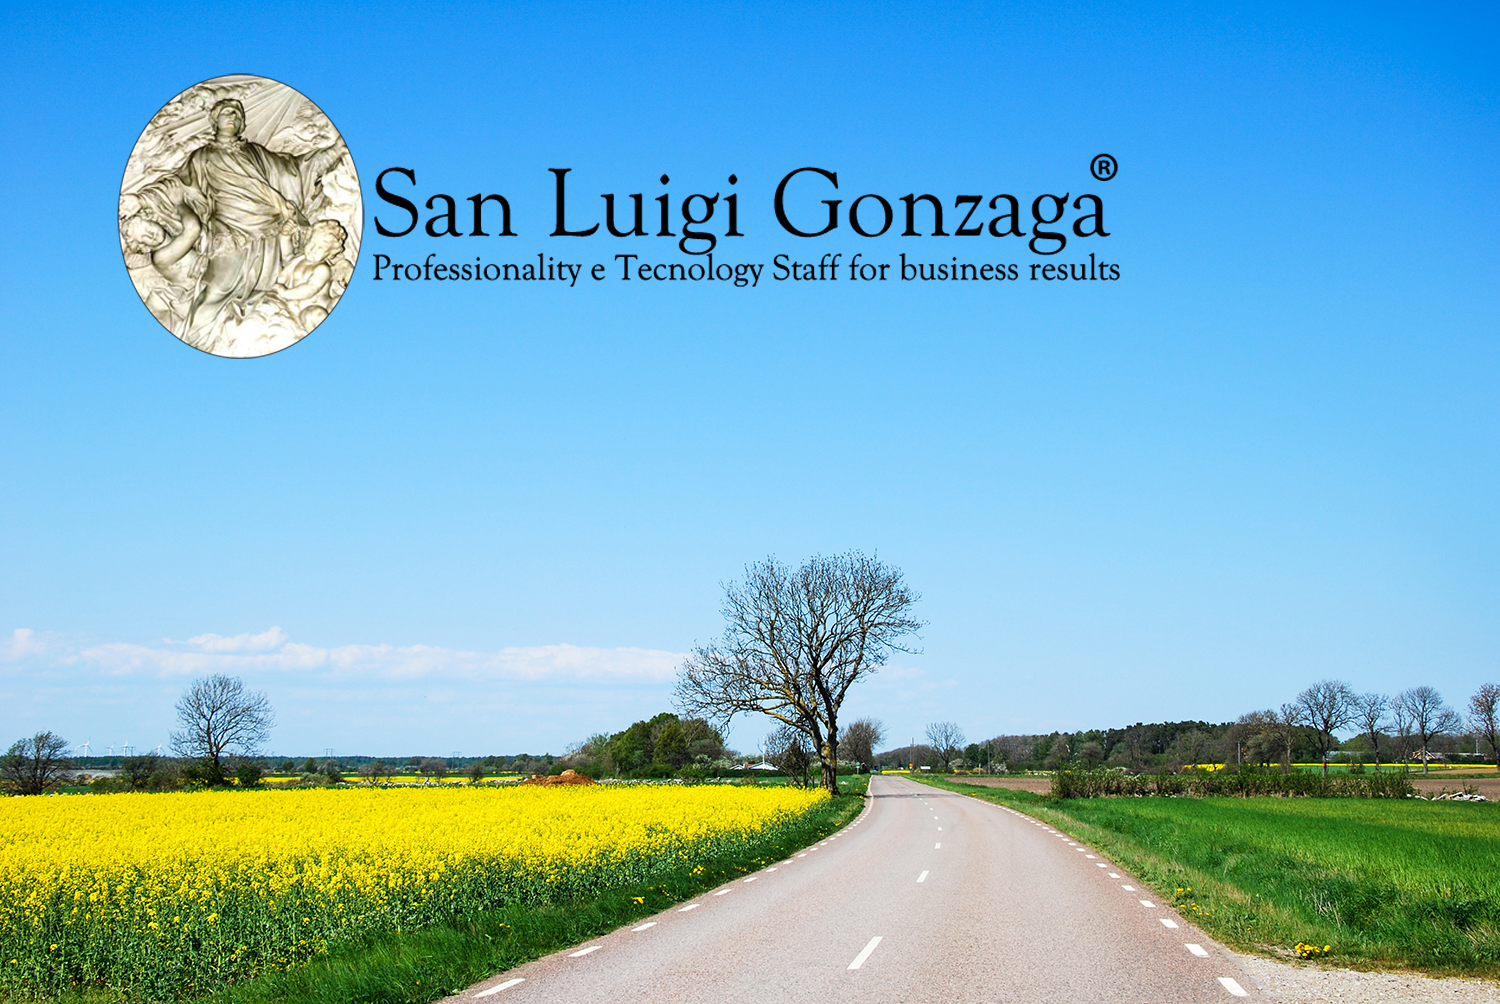 //www.sanluigigonzaga.eu/ialuradiox/wp-content/uploads/2021/11/San-Luigi-Gonzaga-Sostenibilita-ambientale.png